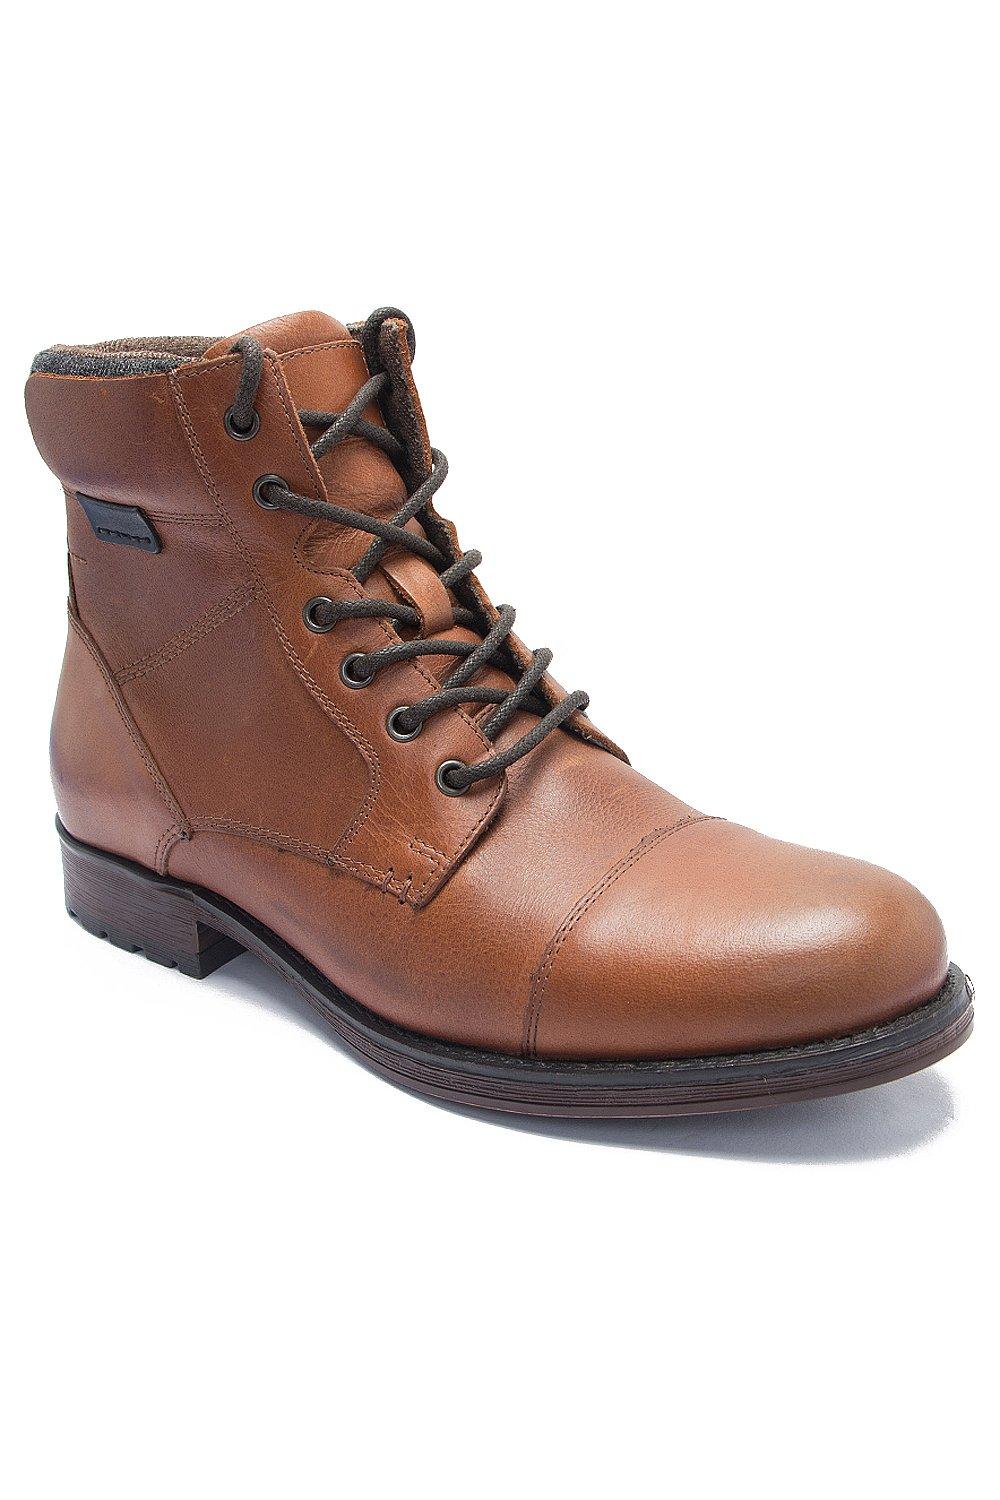 Кожаные повседневные ботинки дерби на молнии Hawkes до щиколотки Thomas Crick, коричневый формальная классическая обувь silwood удобная и прочная модная обувь thomas crick черный